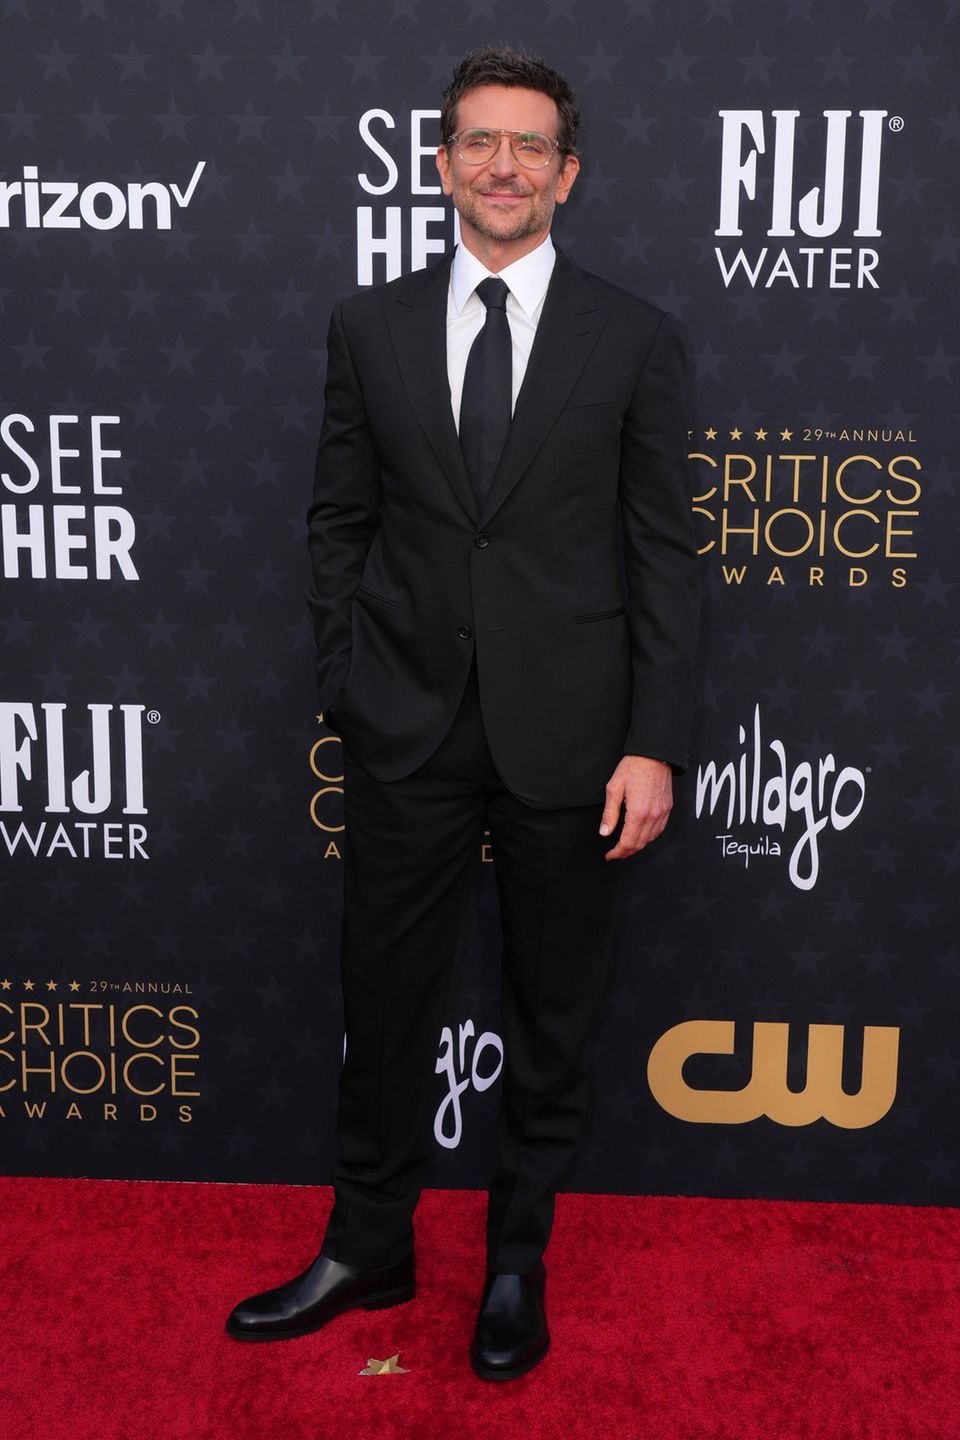 Seltener Anblick! Bradley Cooper zeigt in Los Angeles seine nerdy Seite und begeistert mit großer Piloten-Brille zum schwarzen Anzug. 